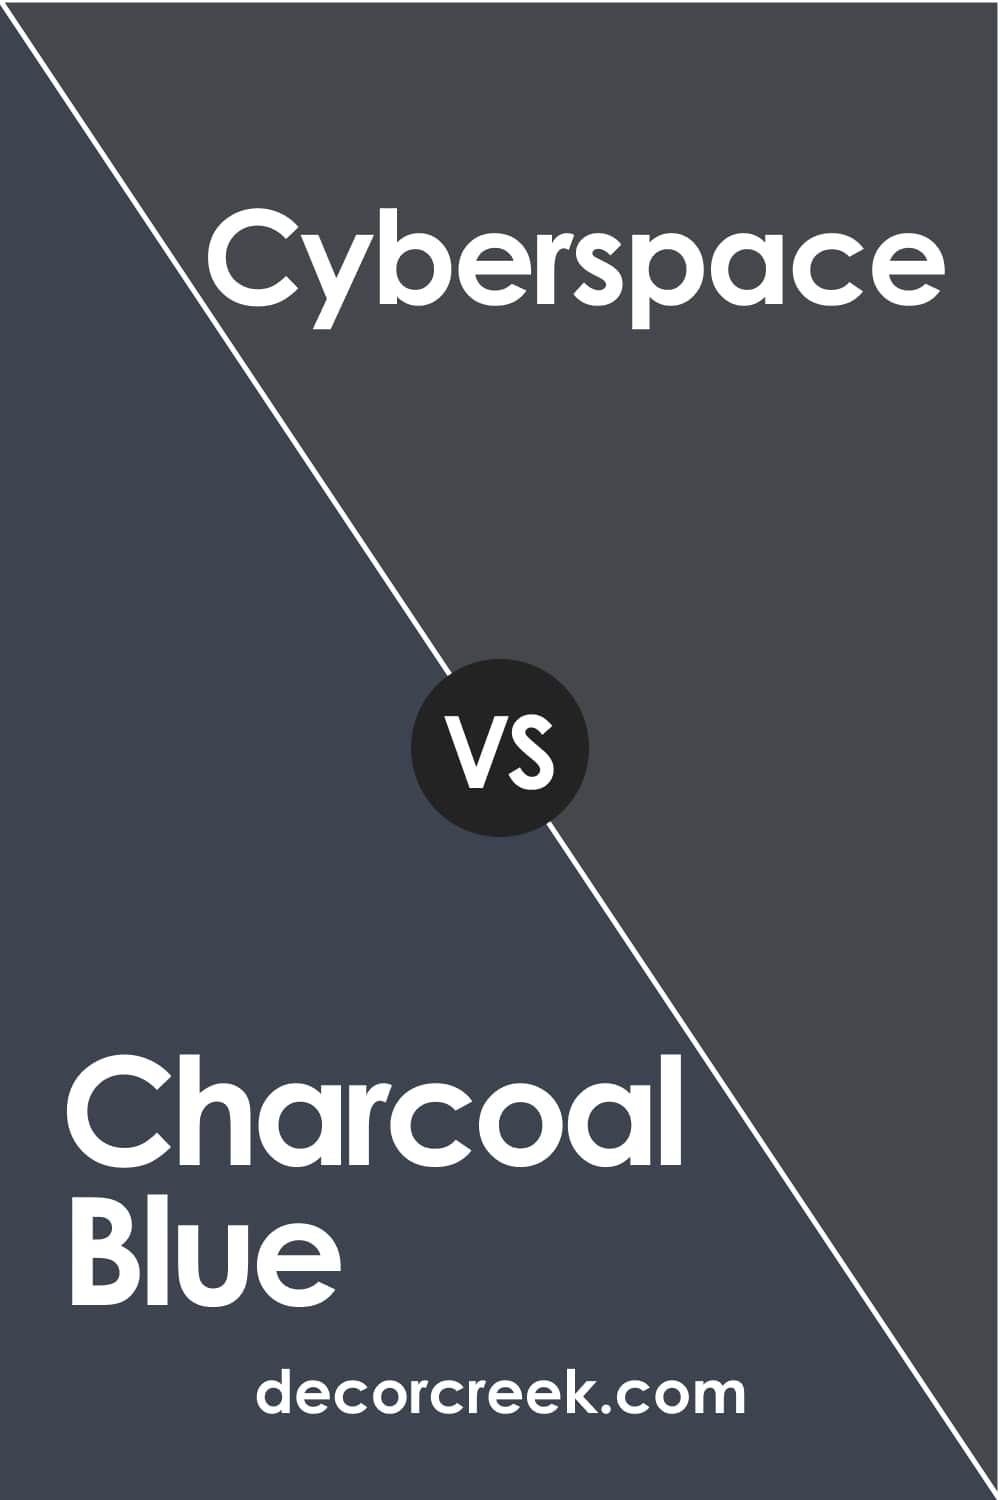 Charcoal Blue vs Cyberspace